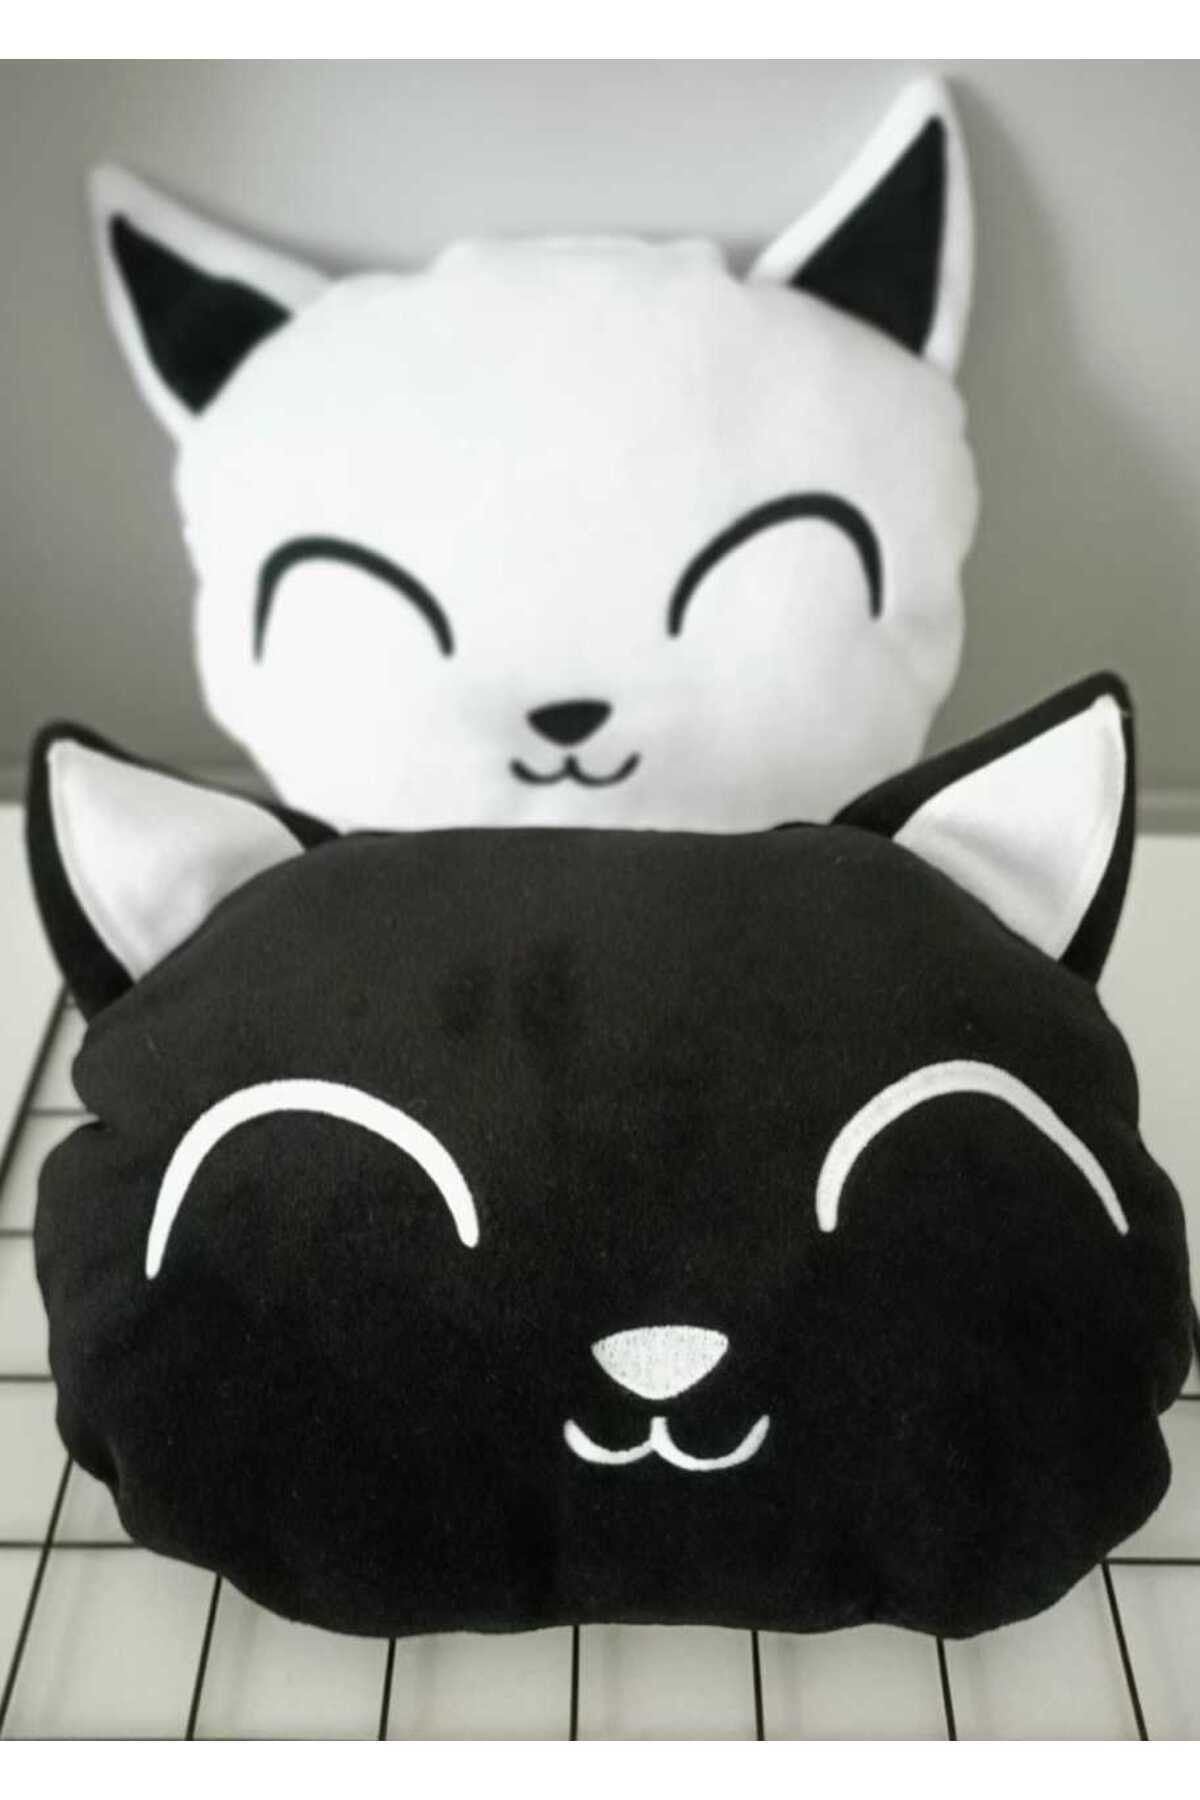 by ballı biocotton İki Sevimli Kedi Yastık Kombini Siyah-Beyaz